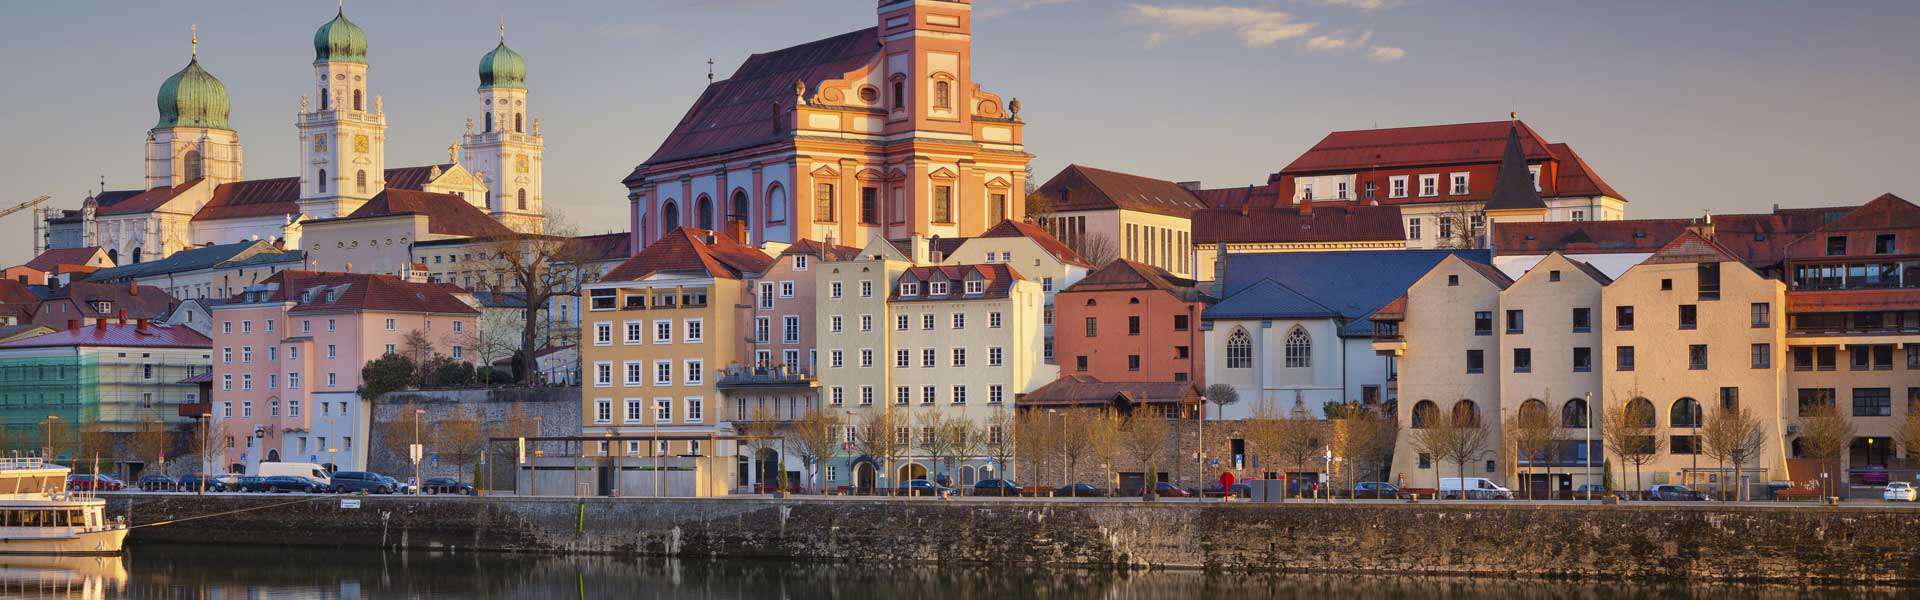 Geschichte erleben! Die Altstadt von Passau